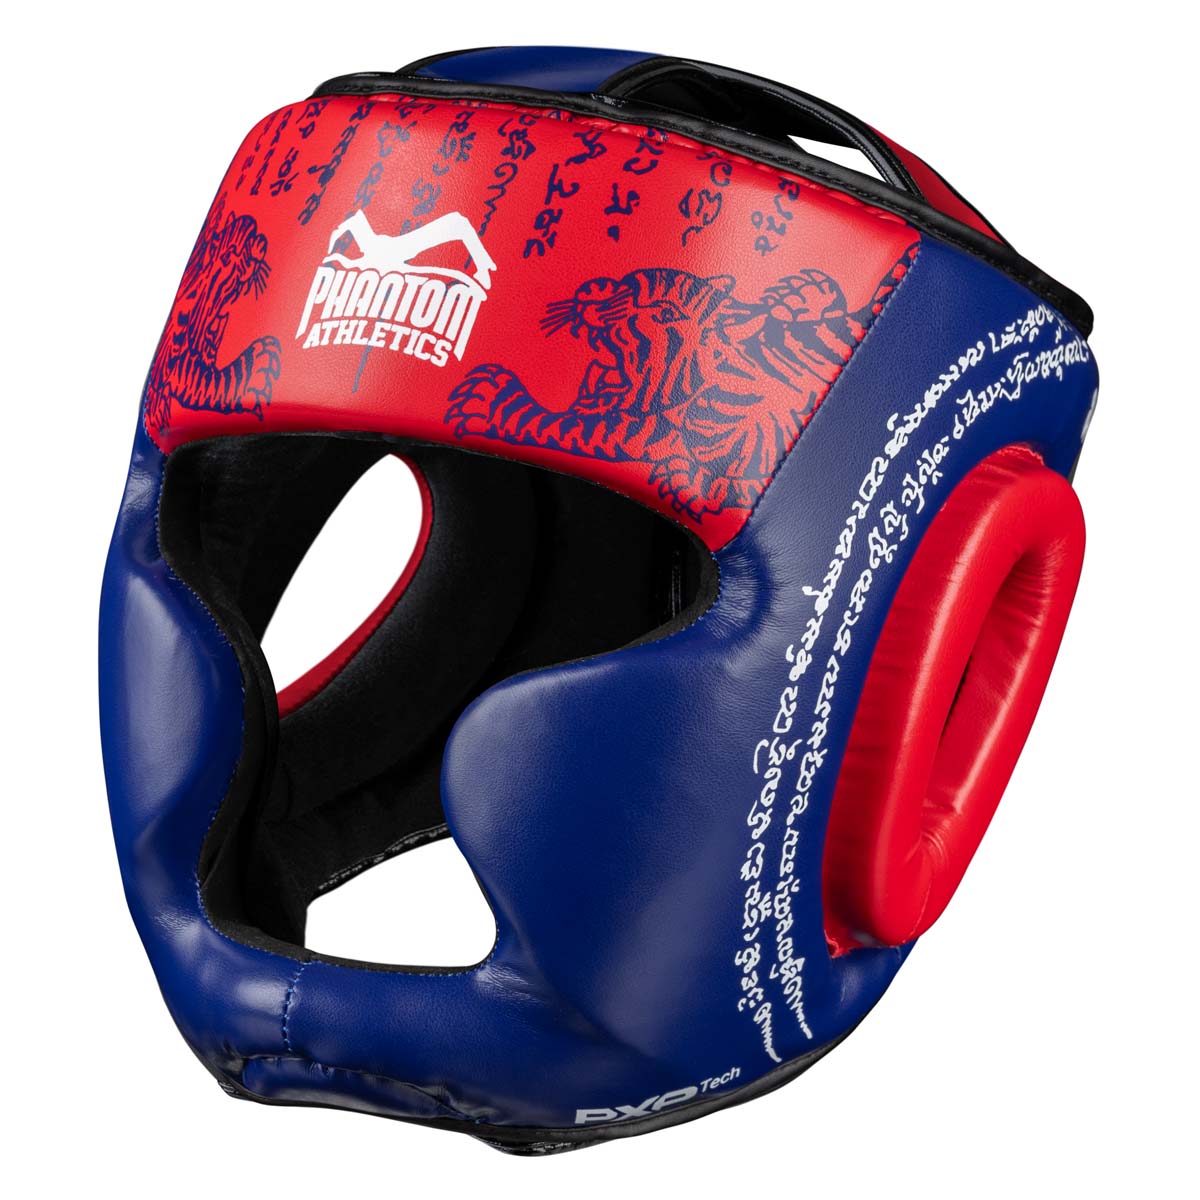 Protección de cabeza Phantom Muay Thai para combate, competición y entrenamiento de boxeo tailandés y MMA. Con el diseño tradicional de Sak Yant y el color azul/rojo.